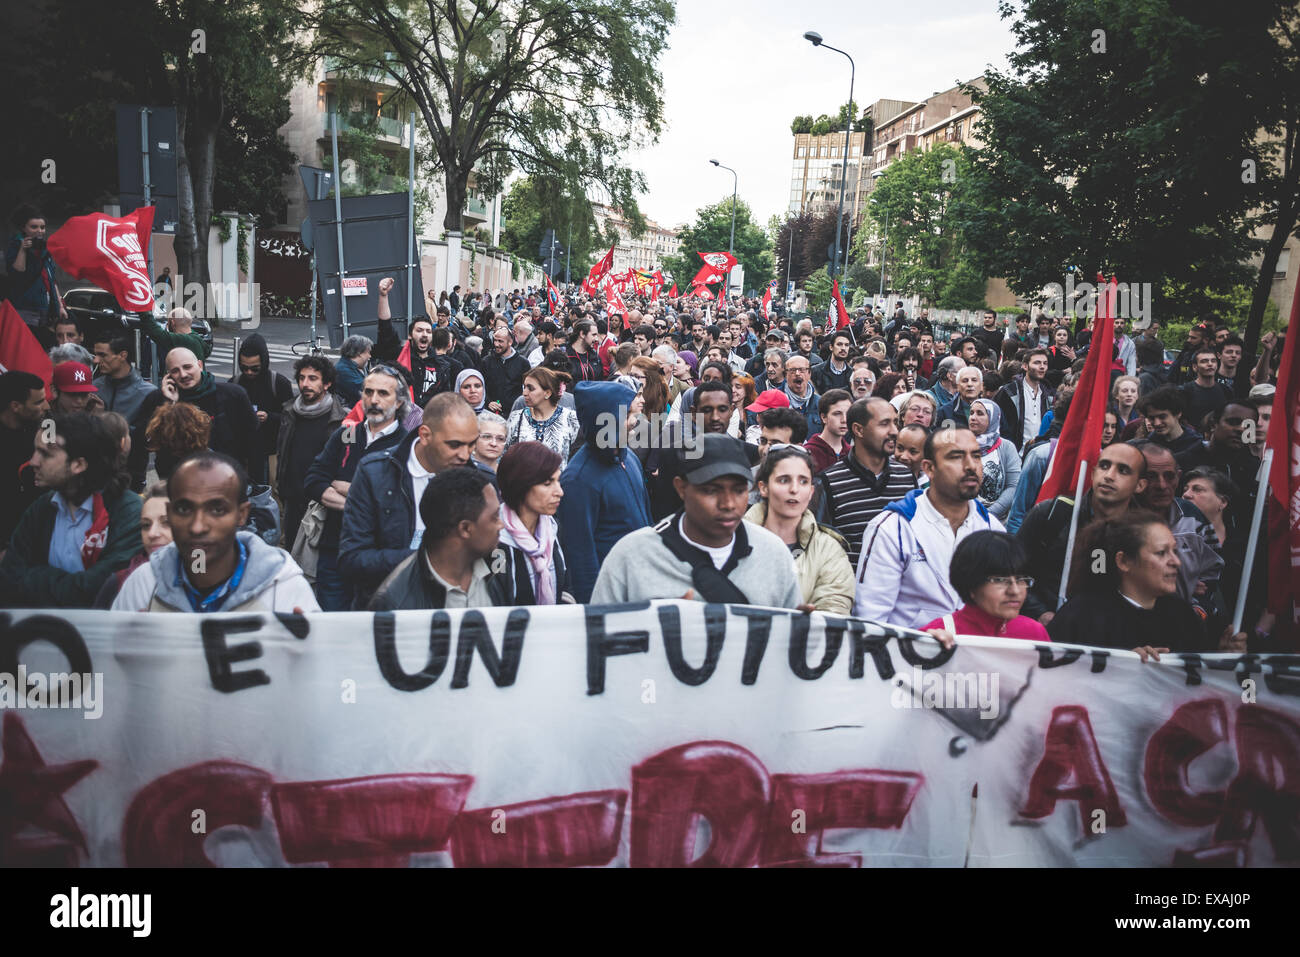 Milano, Italia - 29 aprile: manifestazione contro il fascismo e il nazismo a Milano il 29 aprile 2014. La gente ha preso le strade di Milano per protestare contro il neo nazisti e fascisti gruppi presenti a Milano Foto Stock